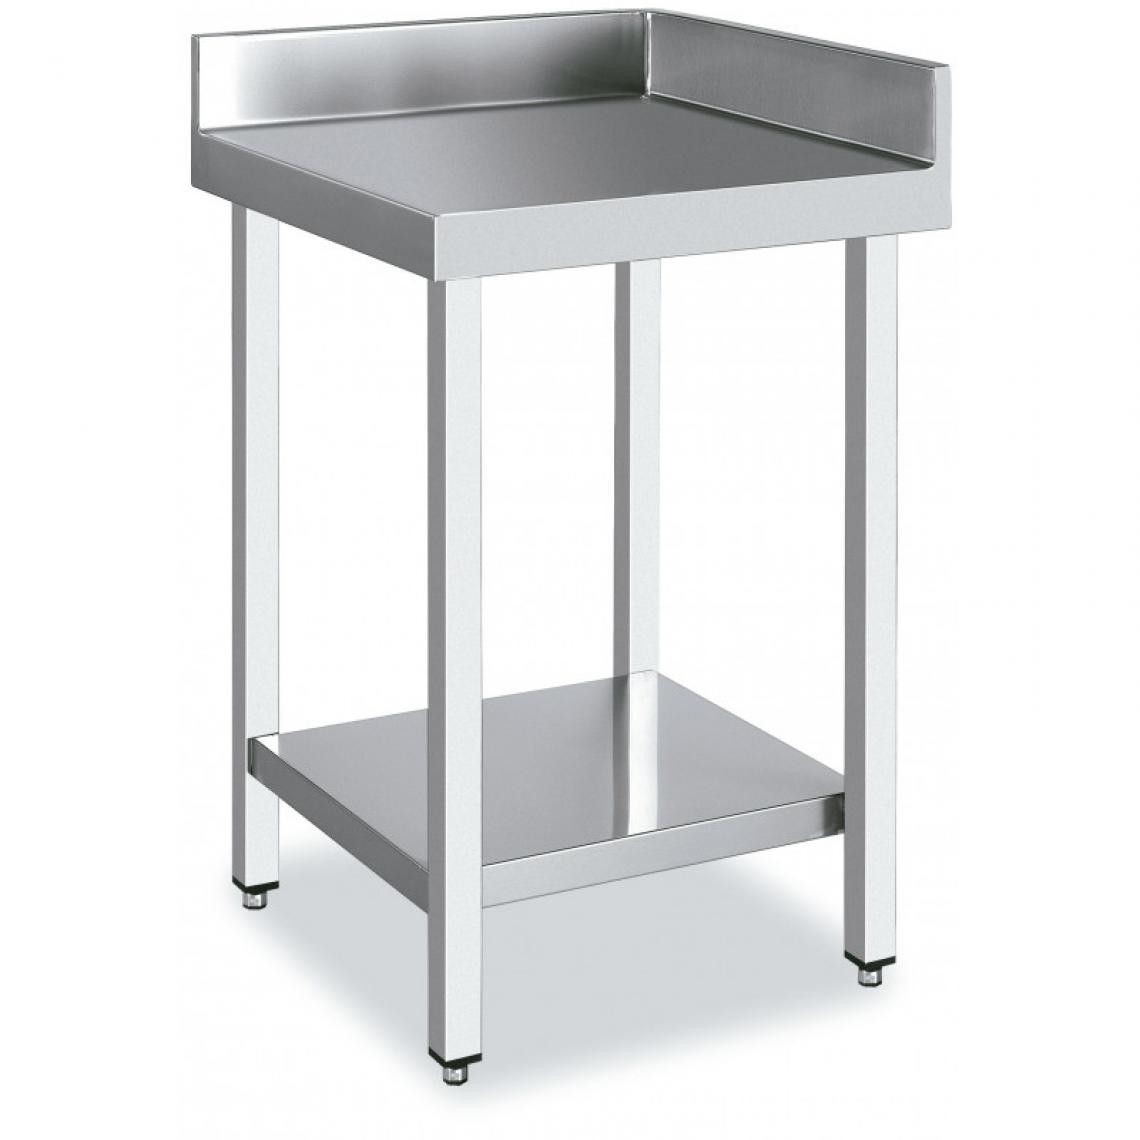 DISTFORM - Table d'Angle 90º Inox Avec une Etagère - Distform - Acier inoxydable700x700 - Tables à manger